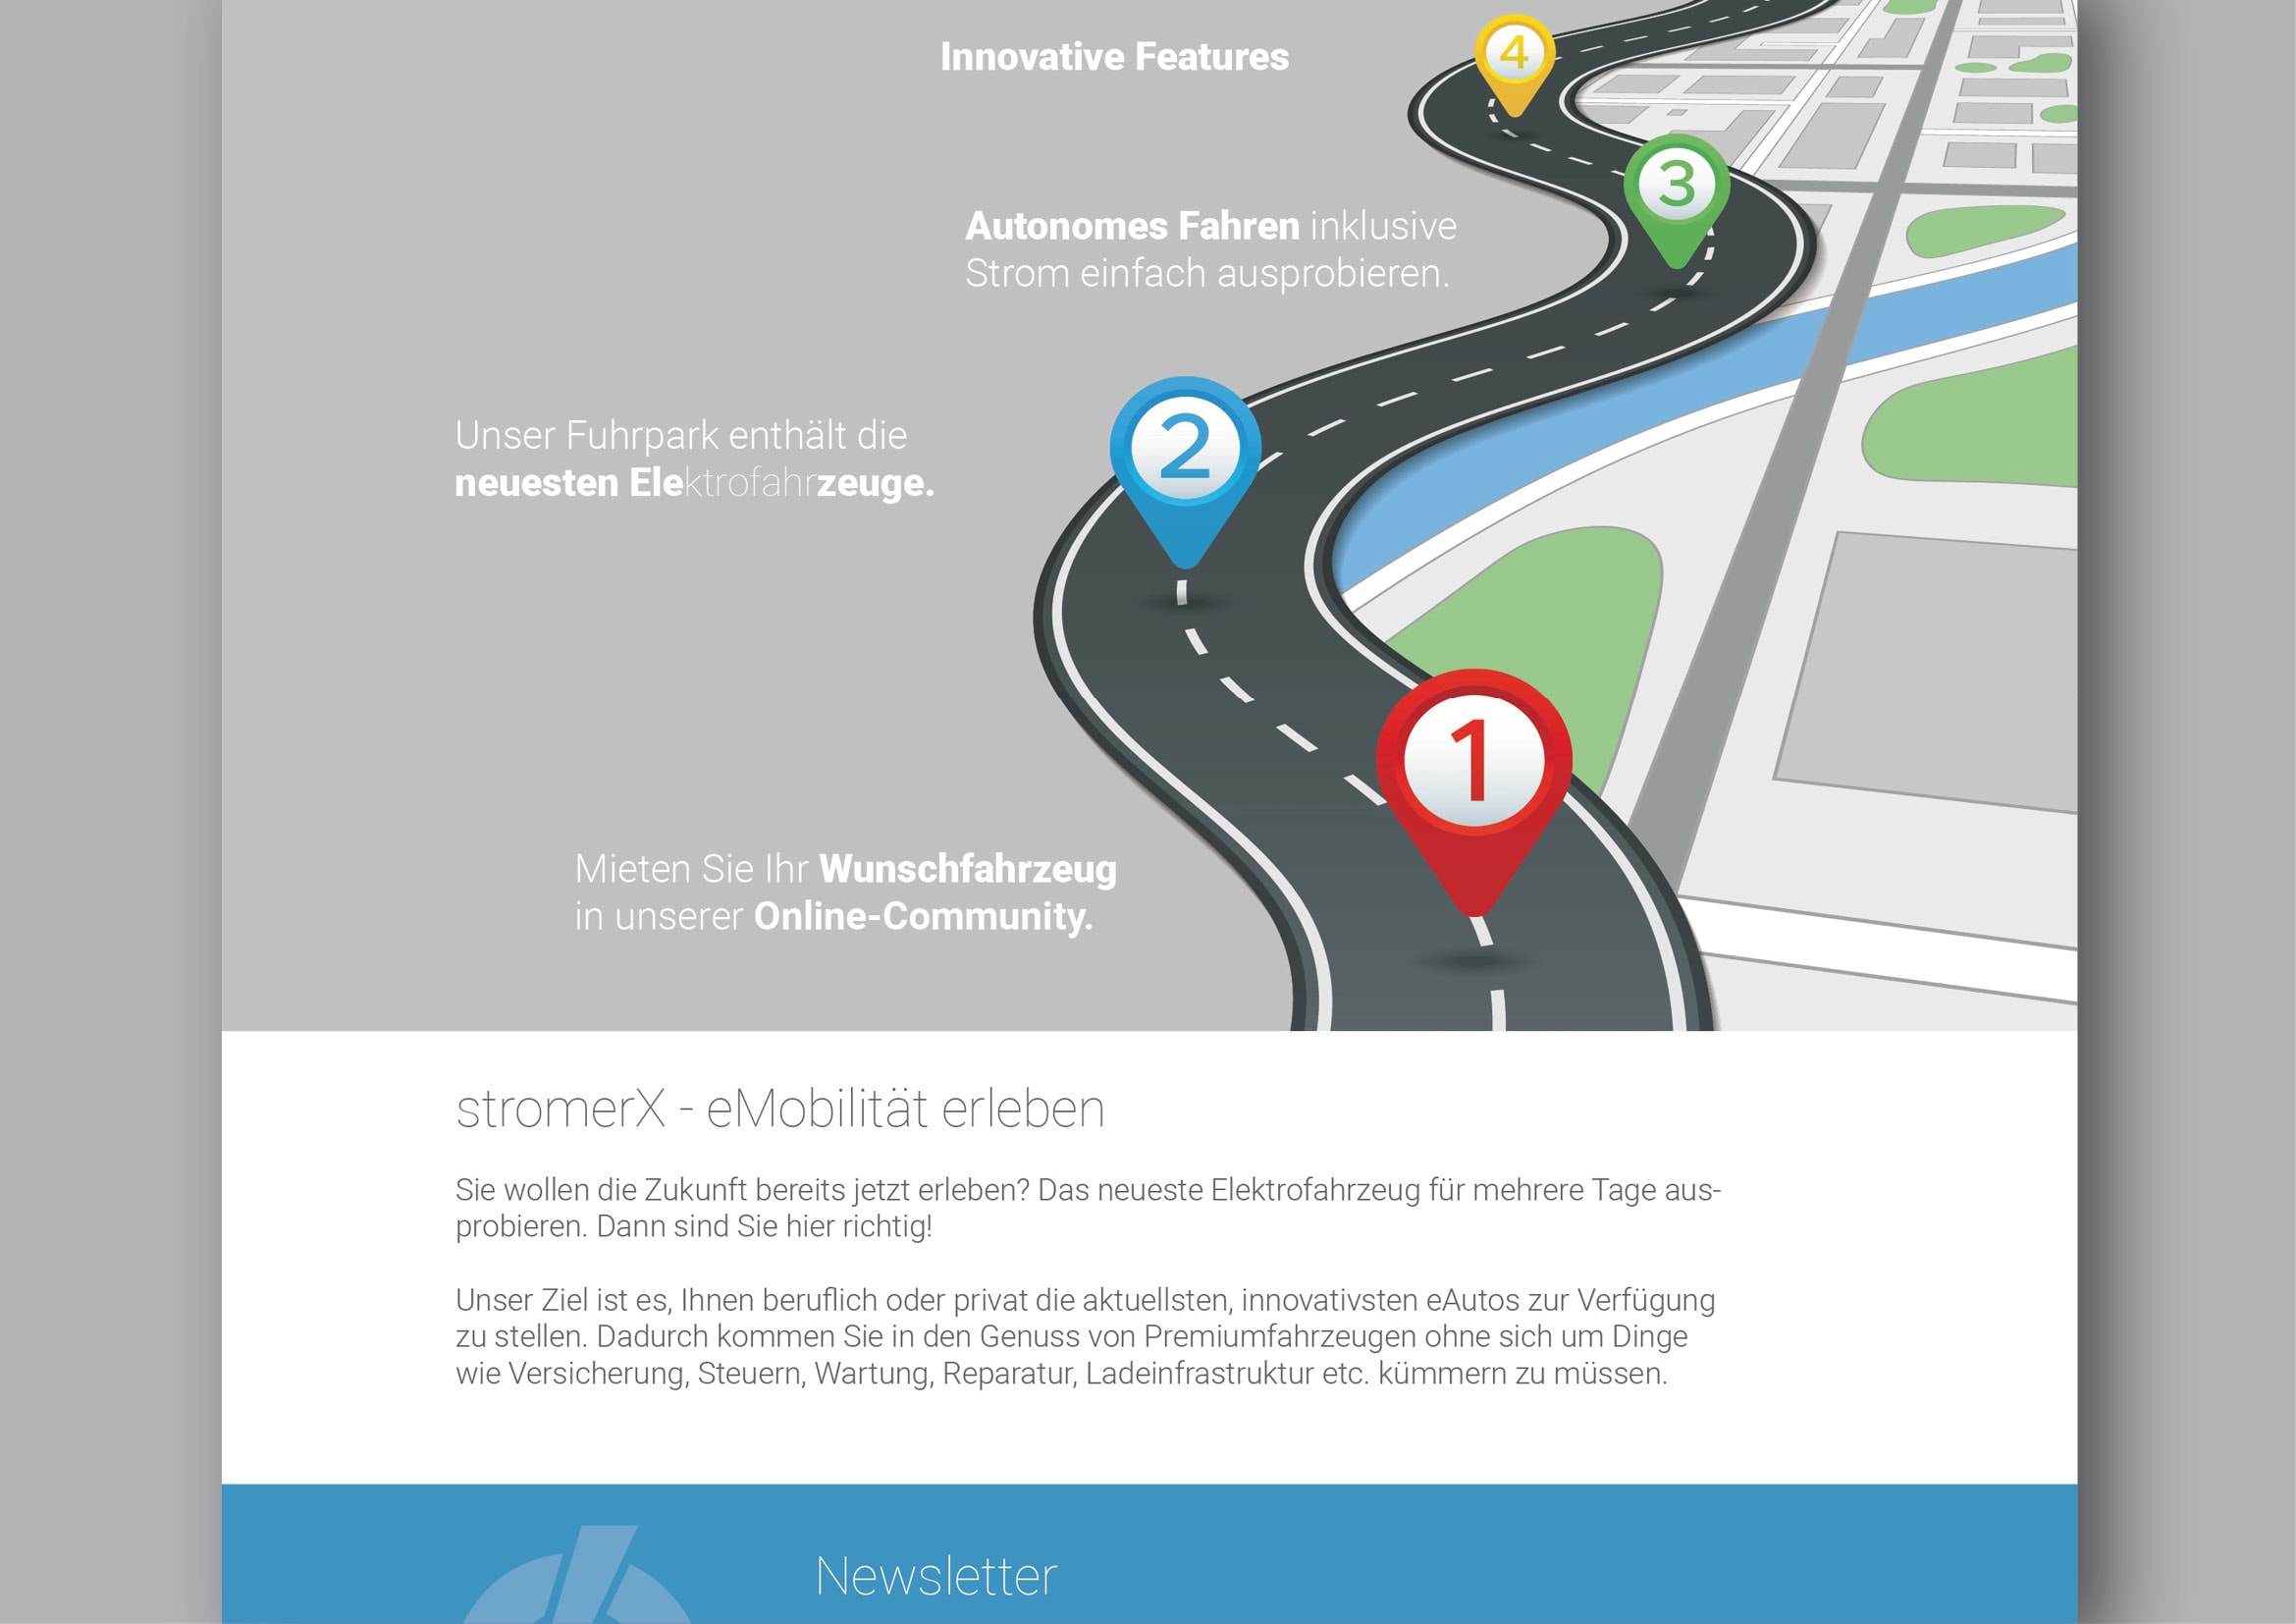 Corporate Design und Homepage Entwicklung StromerX: my e-mobility platform